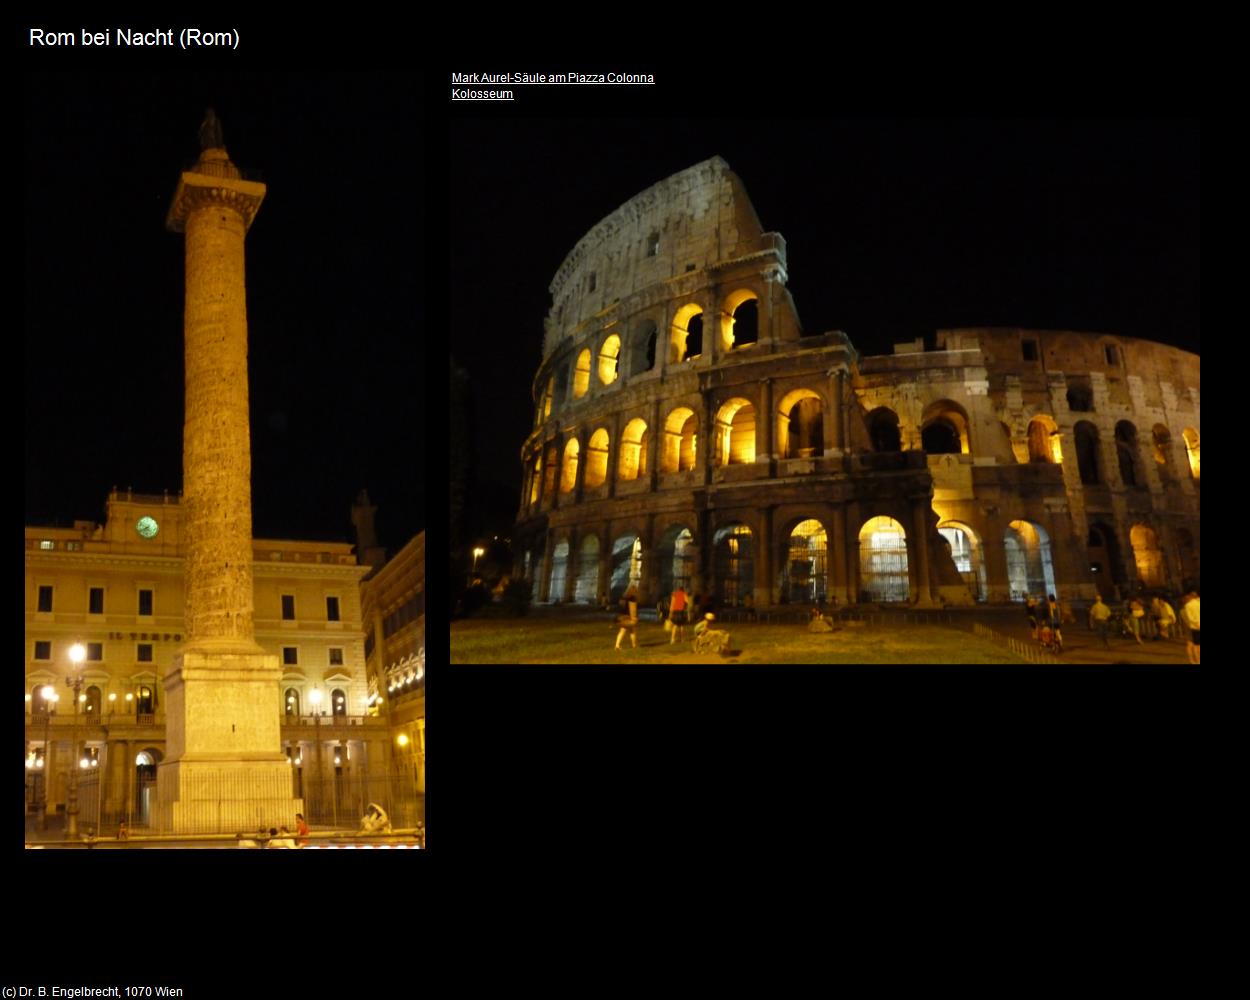 Rom bei Nacht V (Rom-10-Rom bei Nacht) in ROM(c)B.Engelbrecht